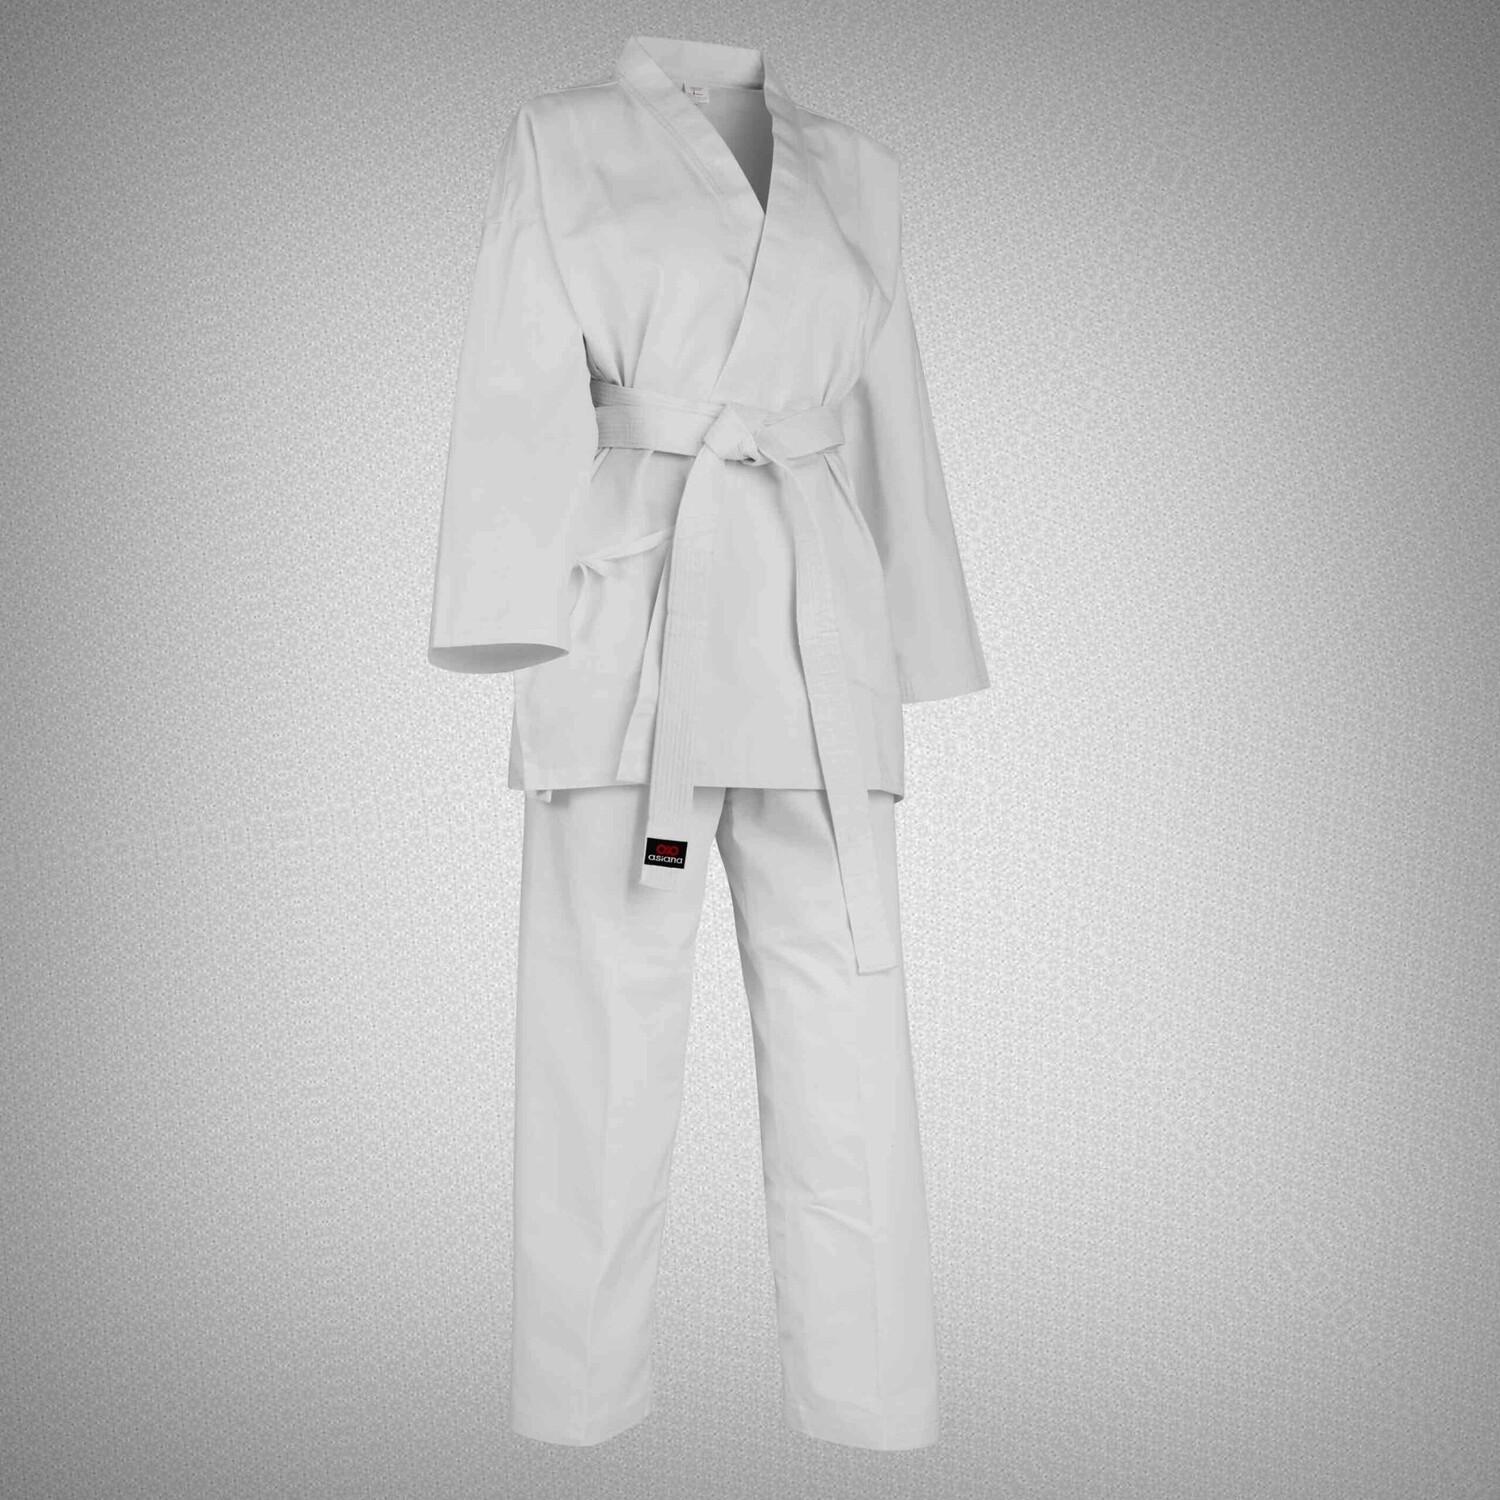 Uniforme Judogi 2 Star blanco